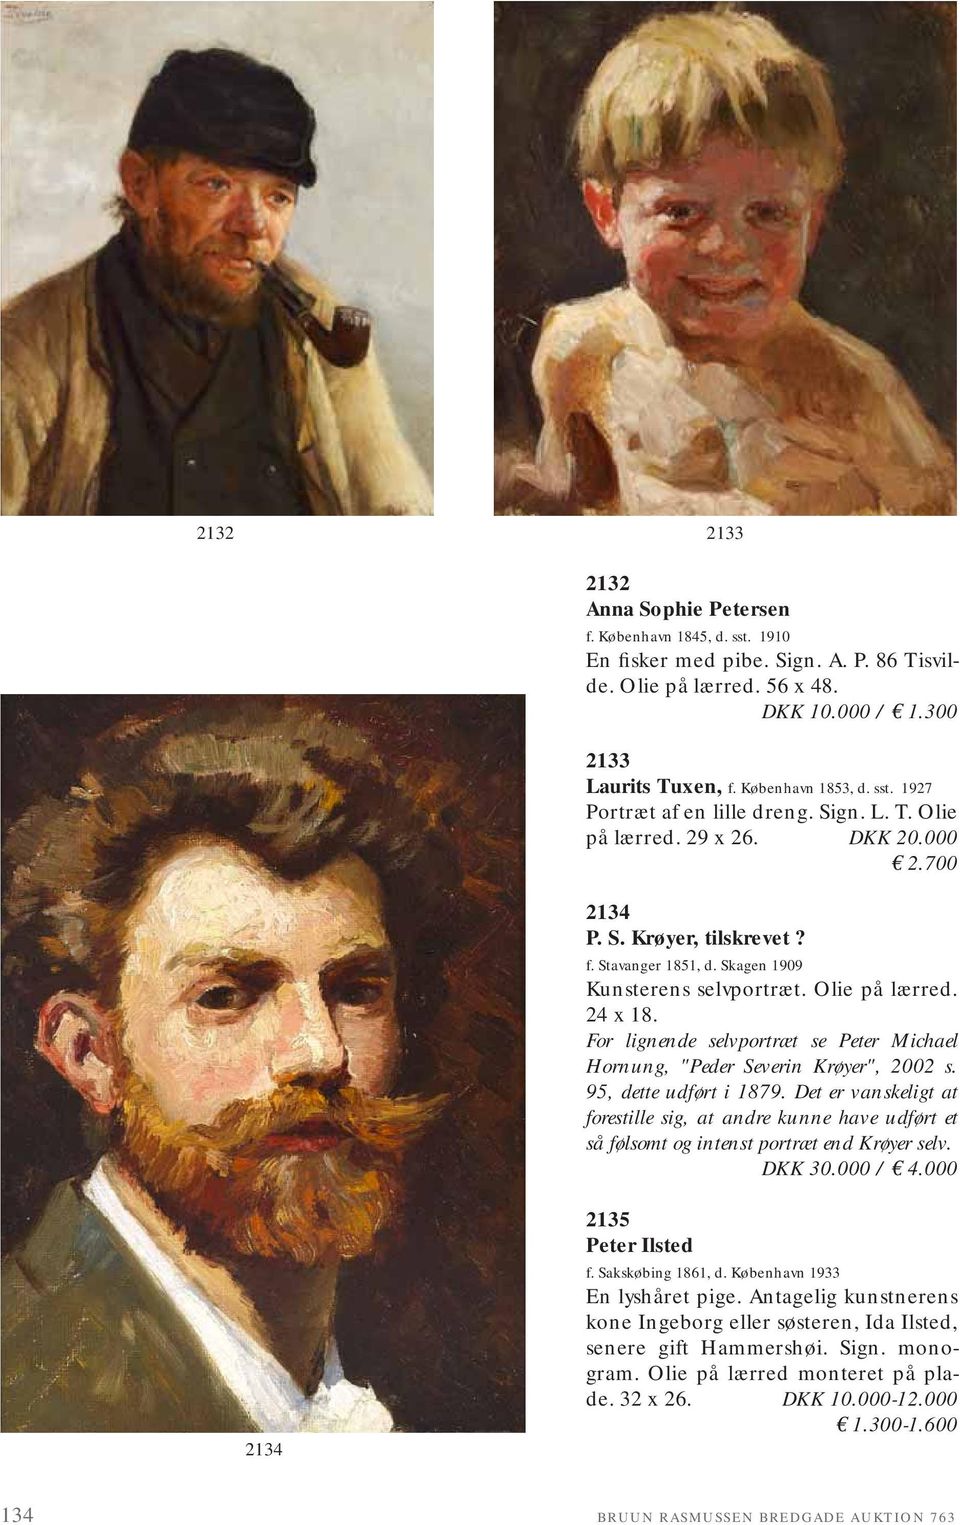 For lignende selvportræt se Peter Michael Hornung, "Peder Severin Krøyer", 2002 s. 95, dette udført i 1879.